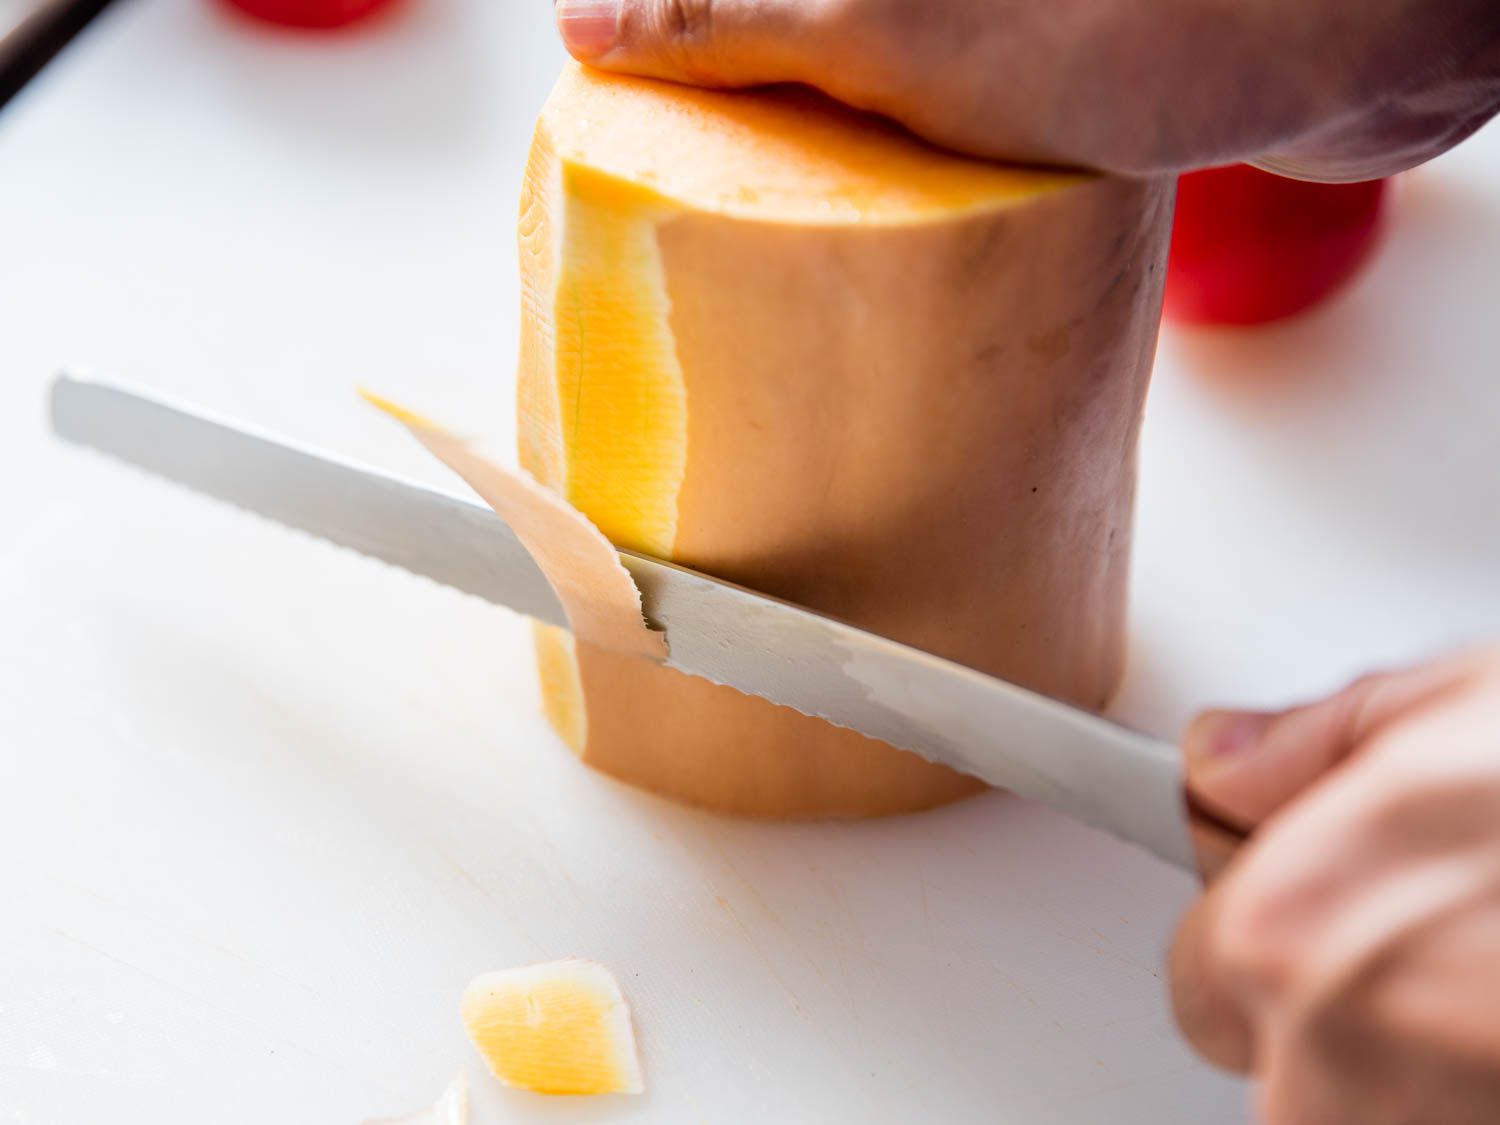 a bread knife peeling a butternut squash